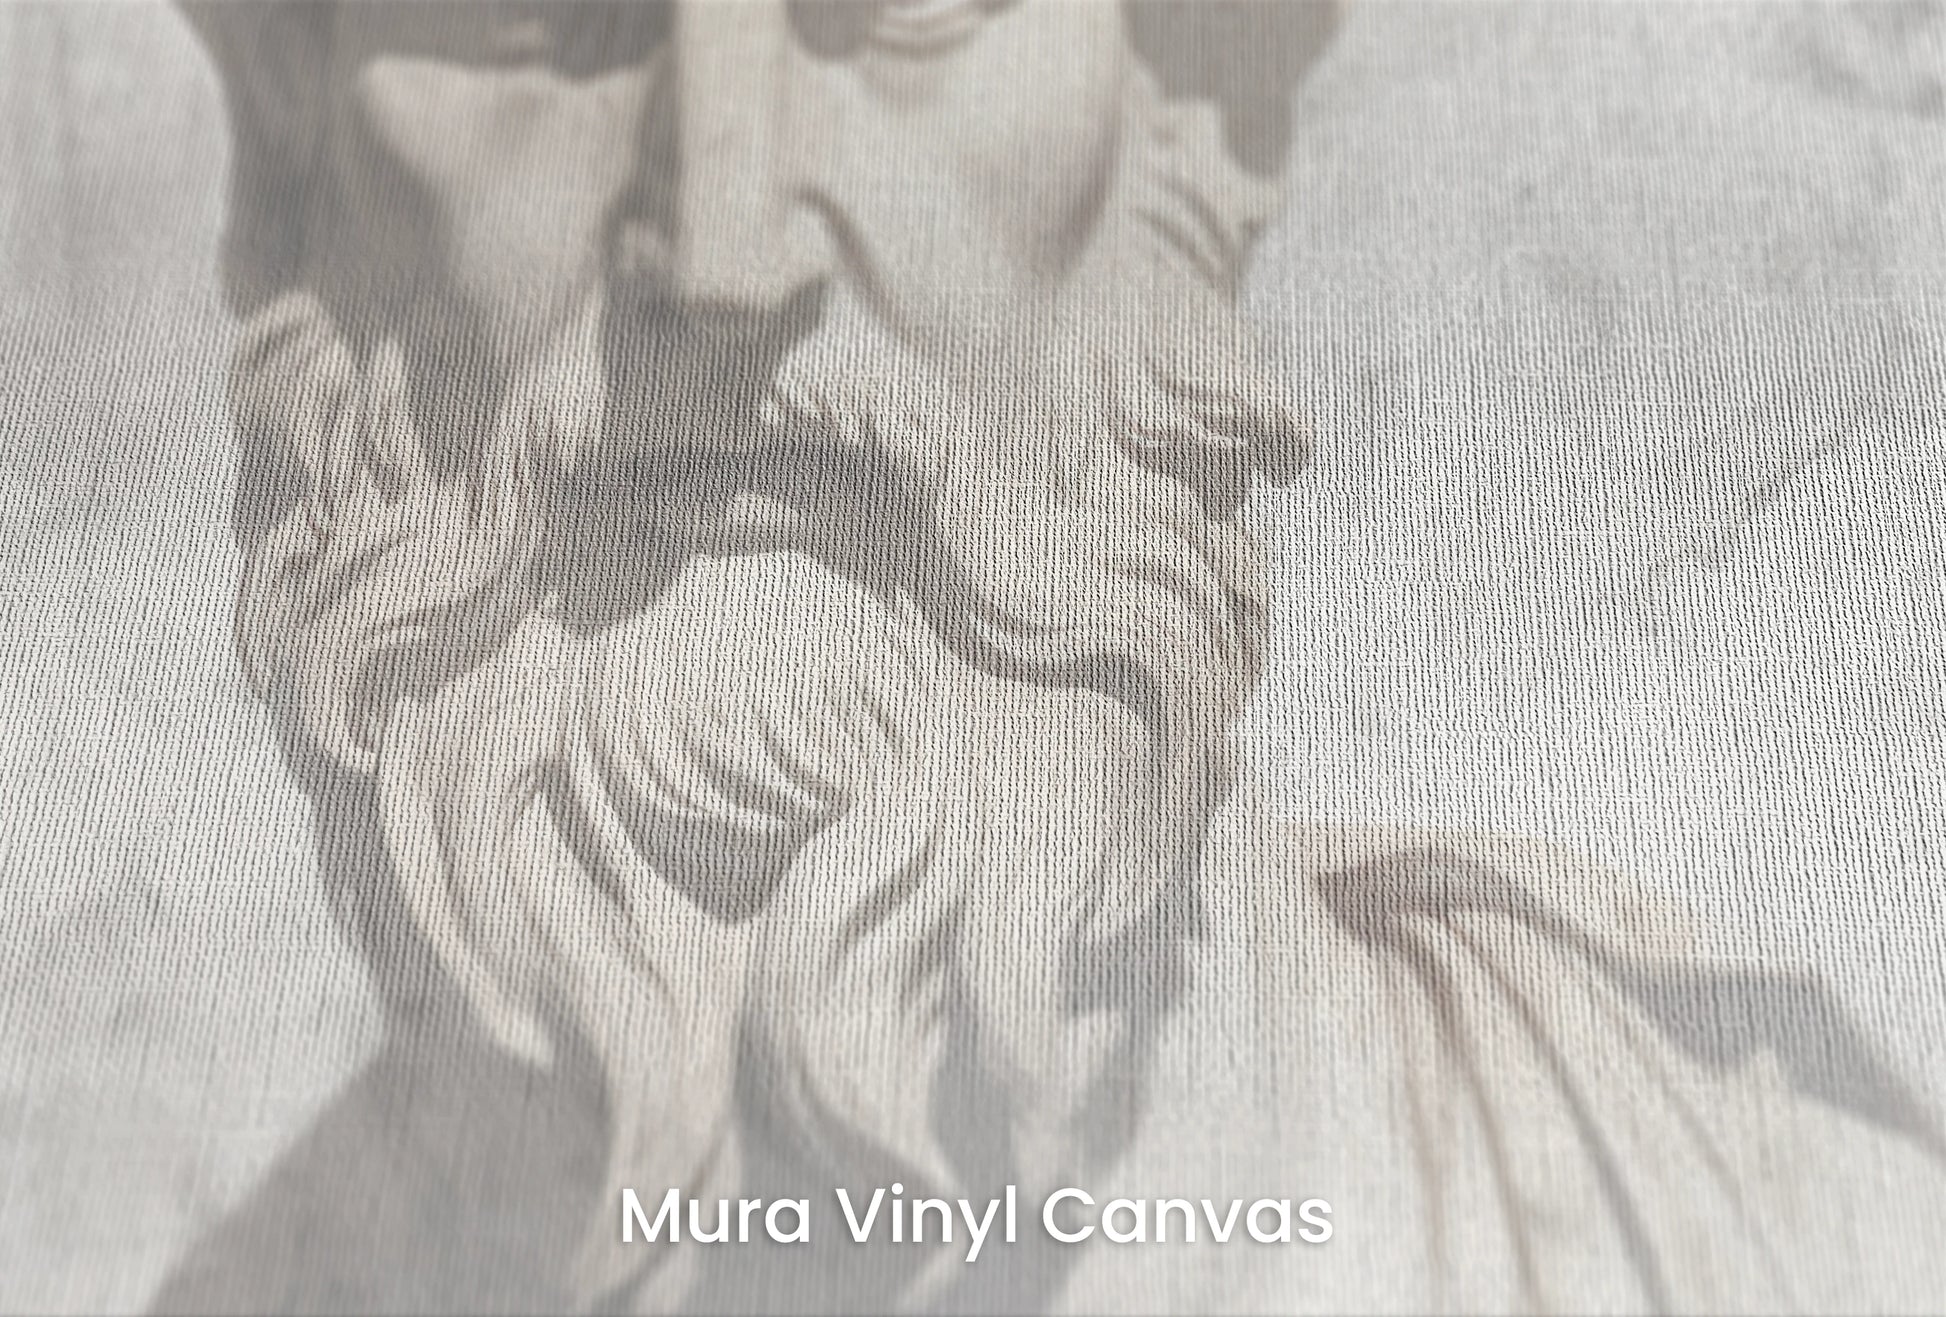 Zbliżenie na artystyczną fototapetę o nazwie Zeus's Deliberation na podłożu Mura Vinyl Canvas - faktura naturalnego płótna.